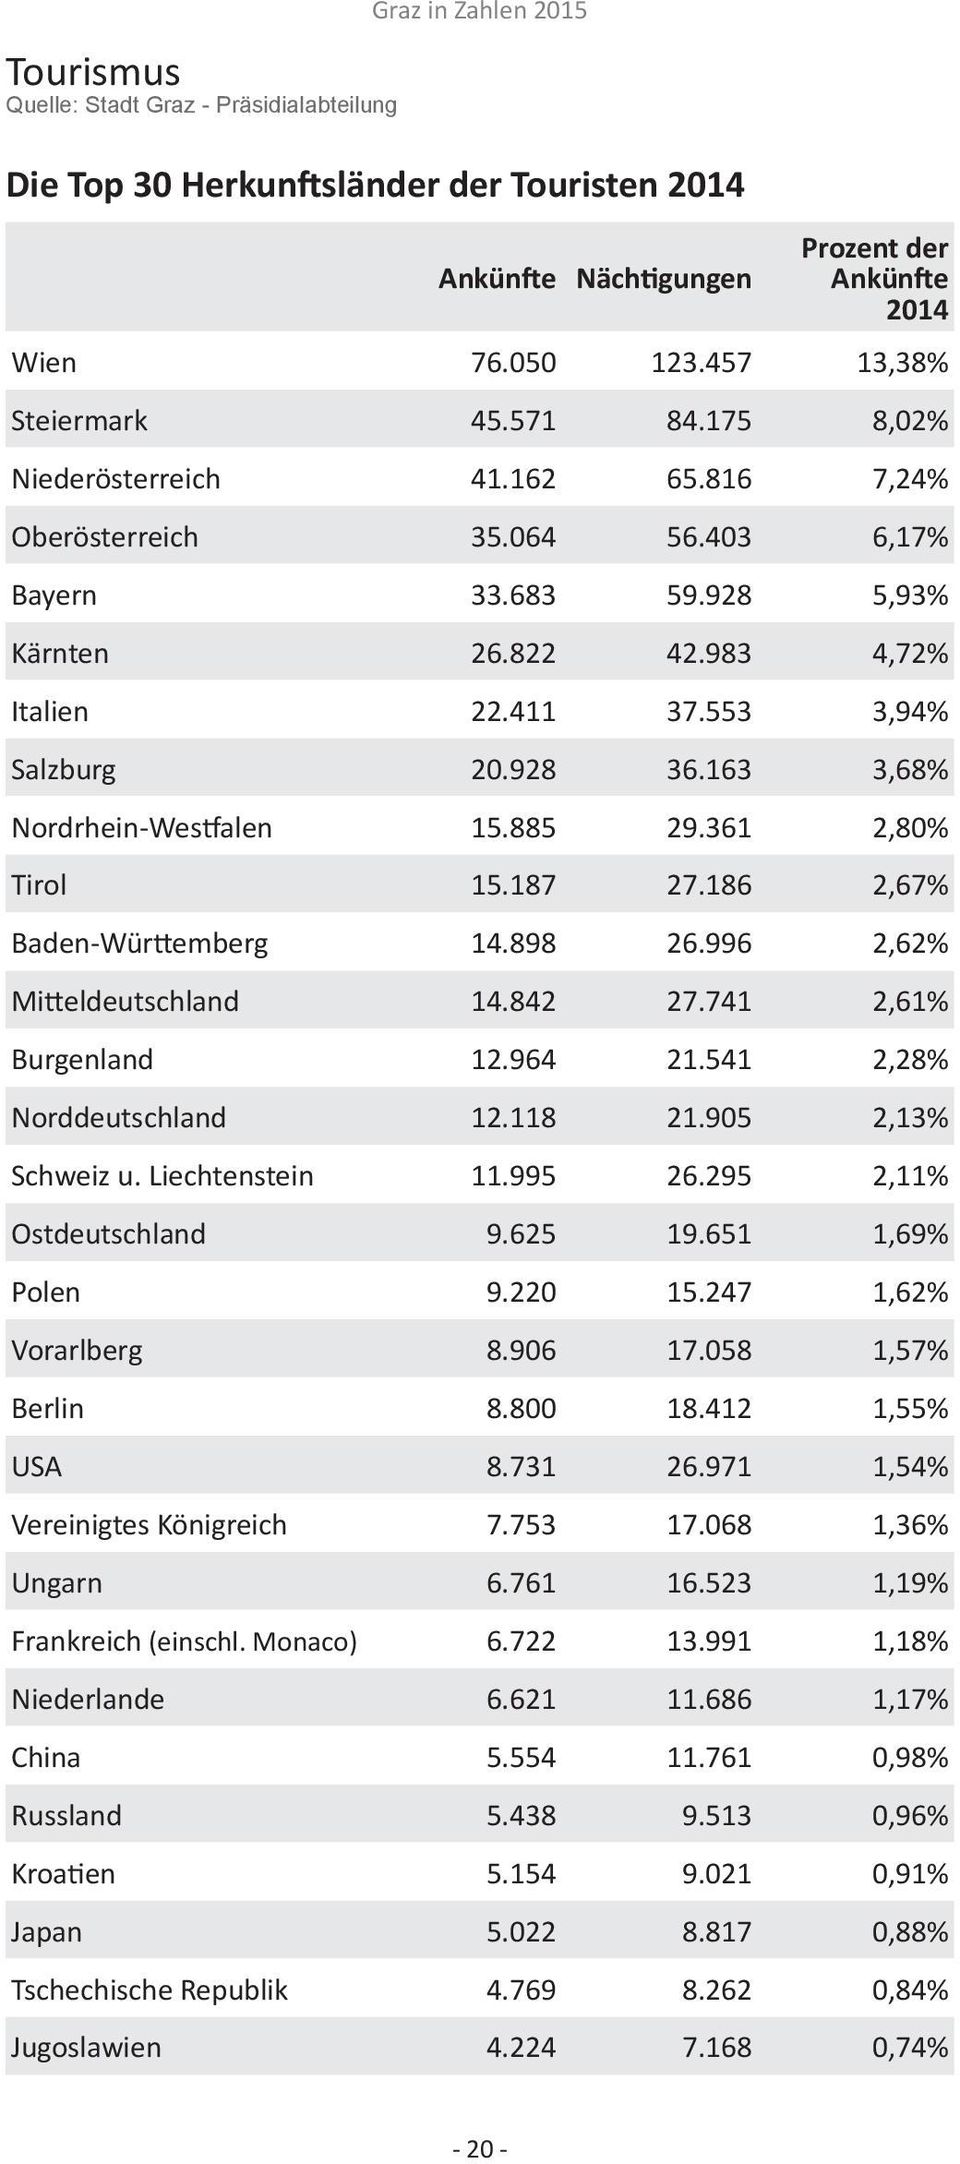 553 3,94% Salzburg 20.928 36.163 3,68% Nordrhein-Westfalen 15.885 29.361 2,80% Tirol 15.187 27.186 2,67% Baden-Württemberg 14.898 26.996 2,62% Mitteldeutschland 14.842 27.741 2,61% Burgenland 12.